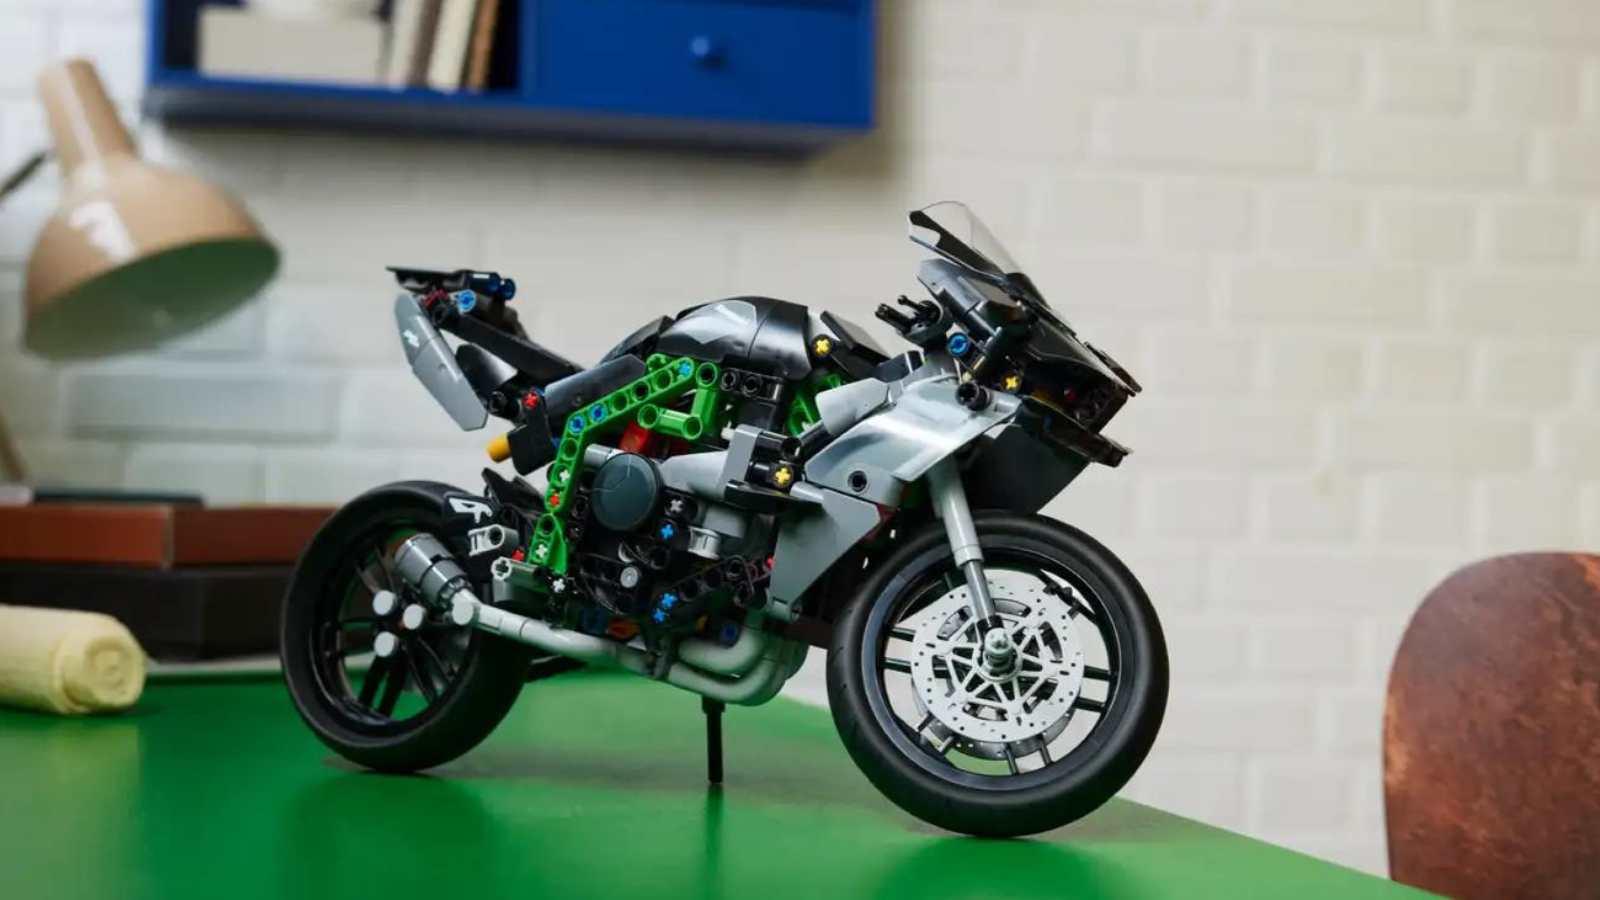 LEGO Technic Kawasaki Ninja H2R Motorcycle on display